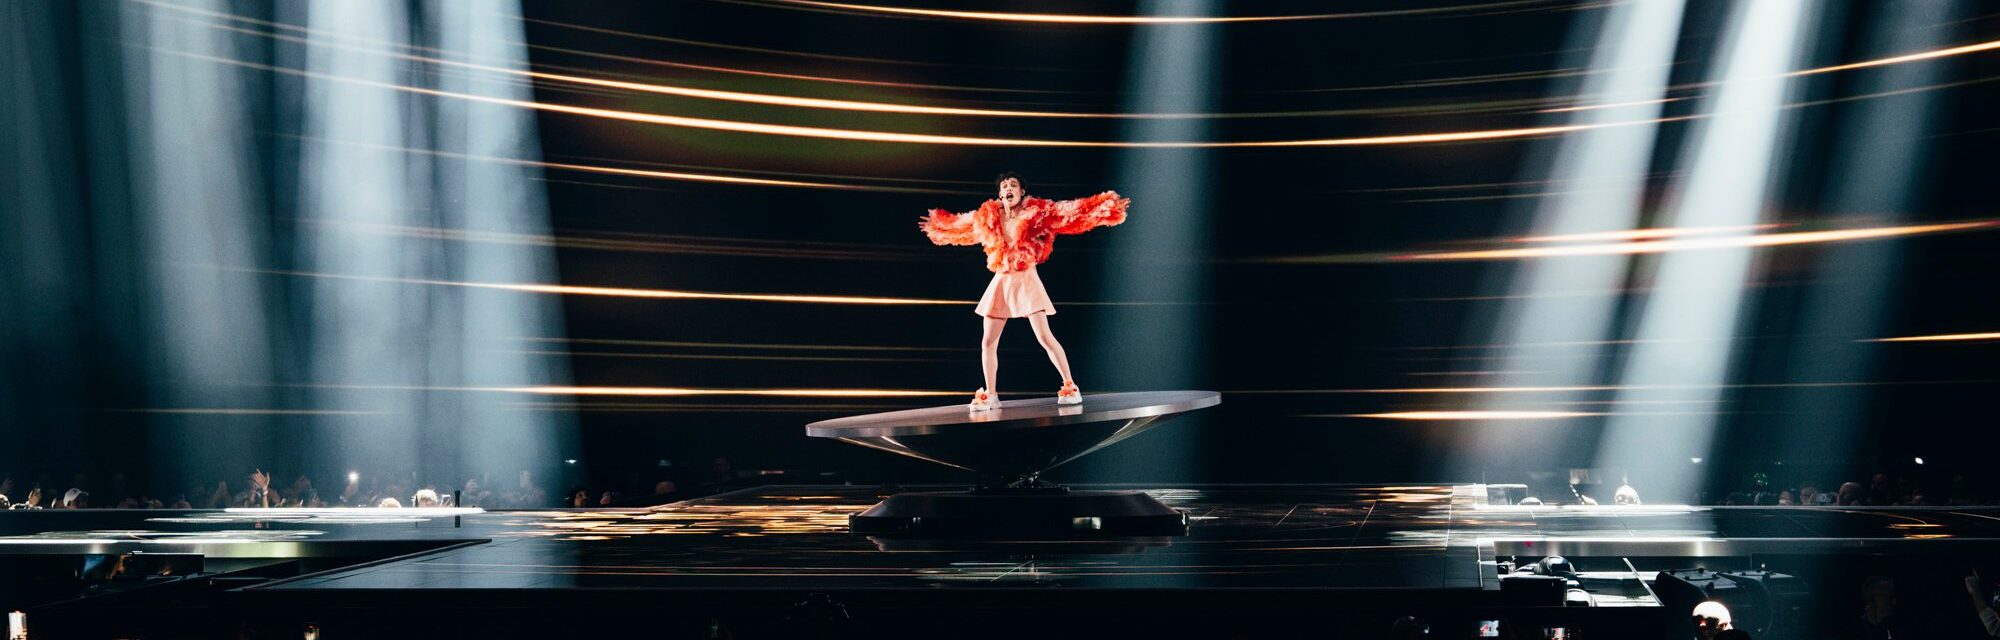 Nemo, Malmö Arena'daki büyük finalde Fransa adına "The Code" performansını sergiliyor.